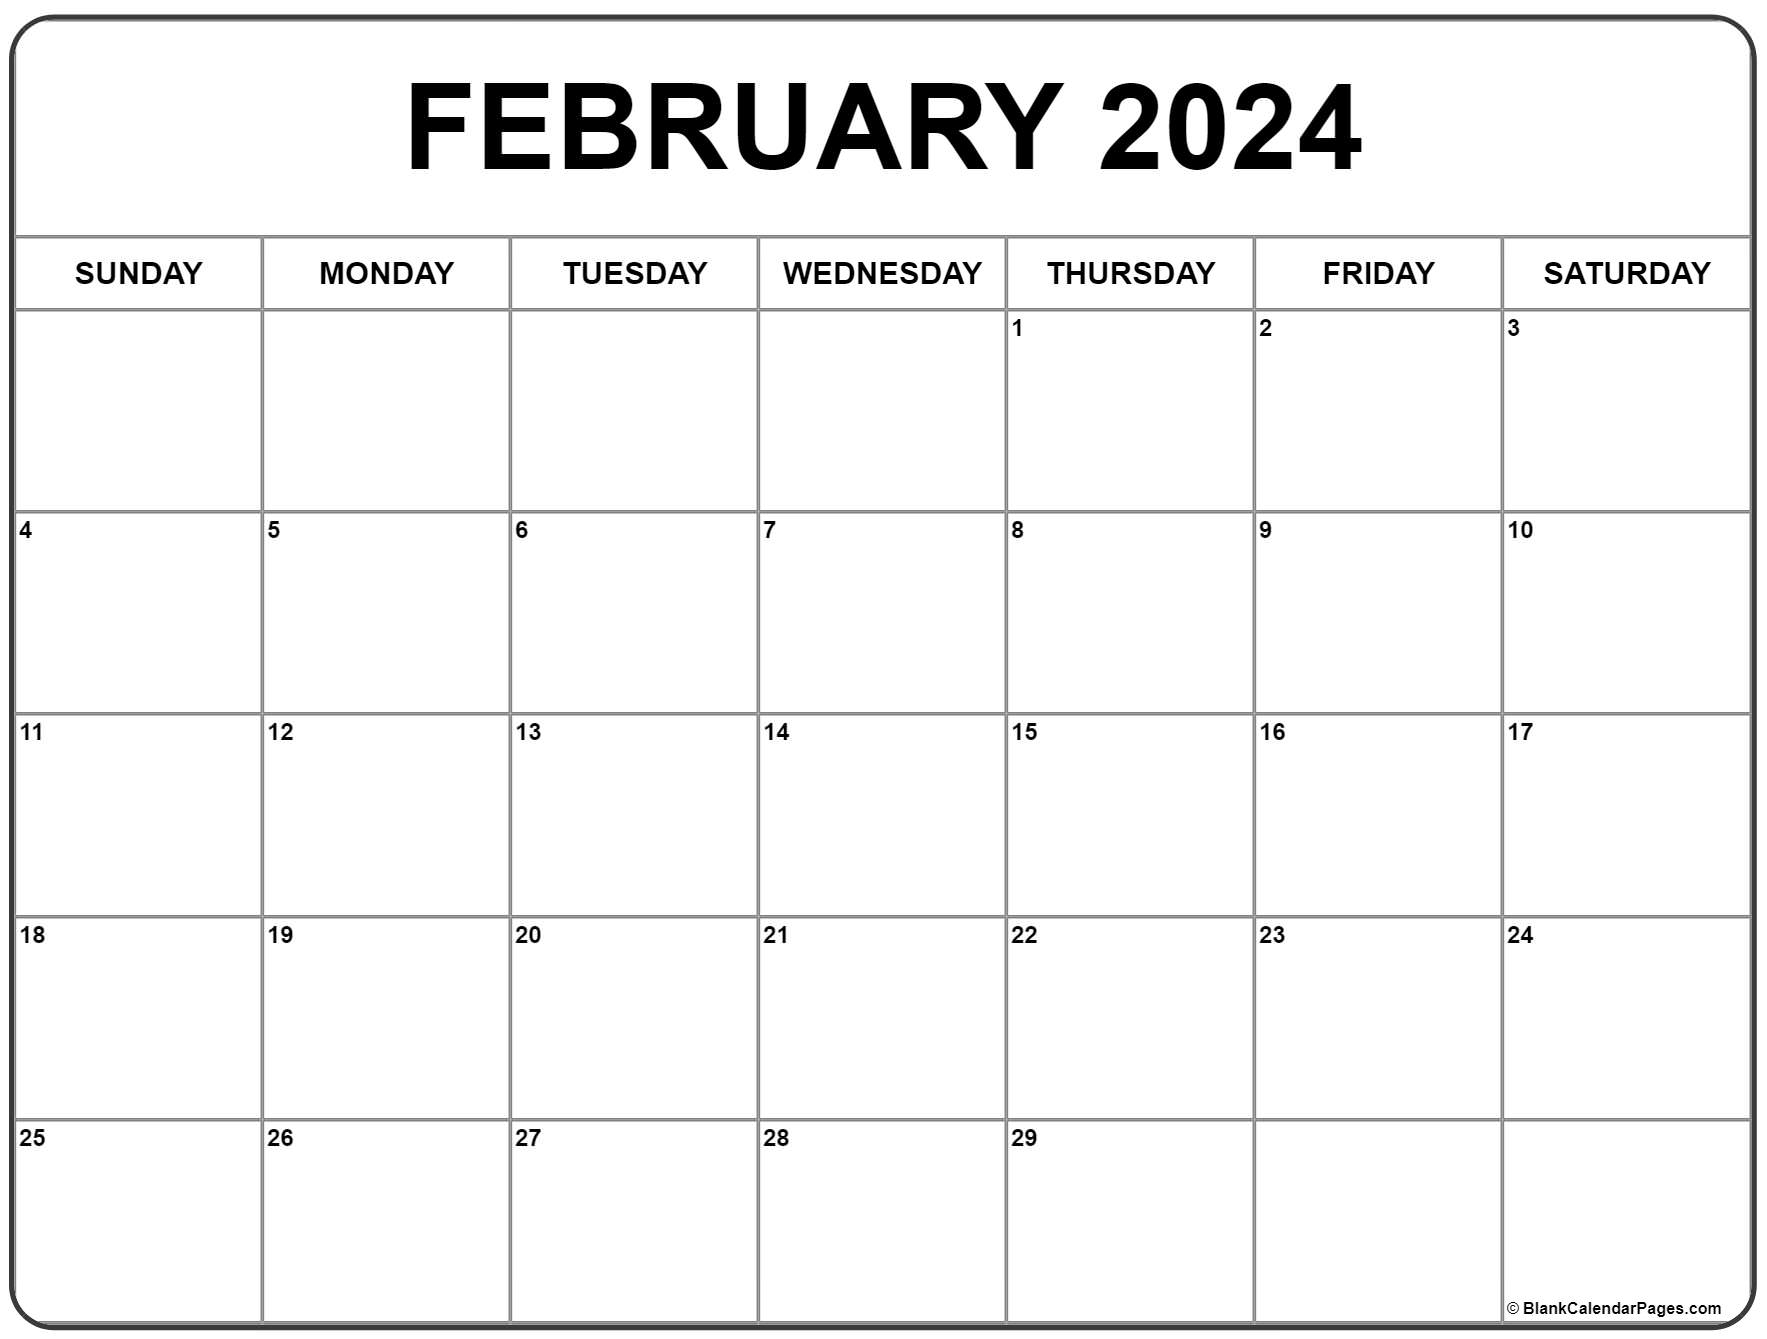 February 2024 Calendar | Free Printable Calendar for February Free Printable Calendar 2024